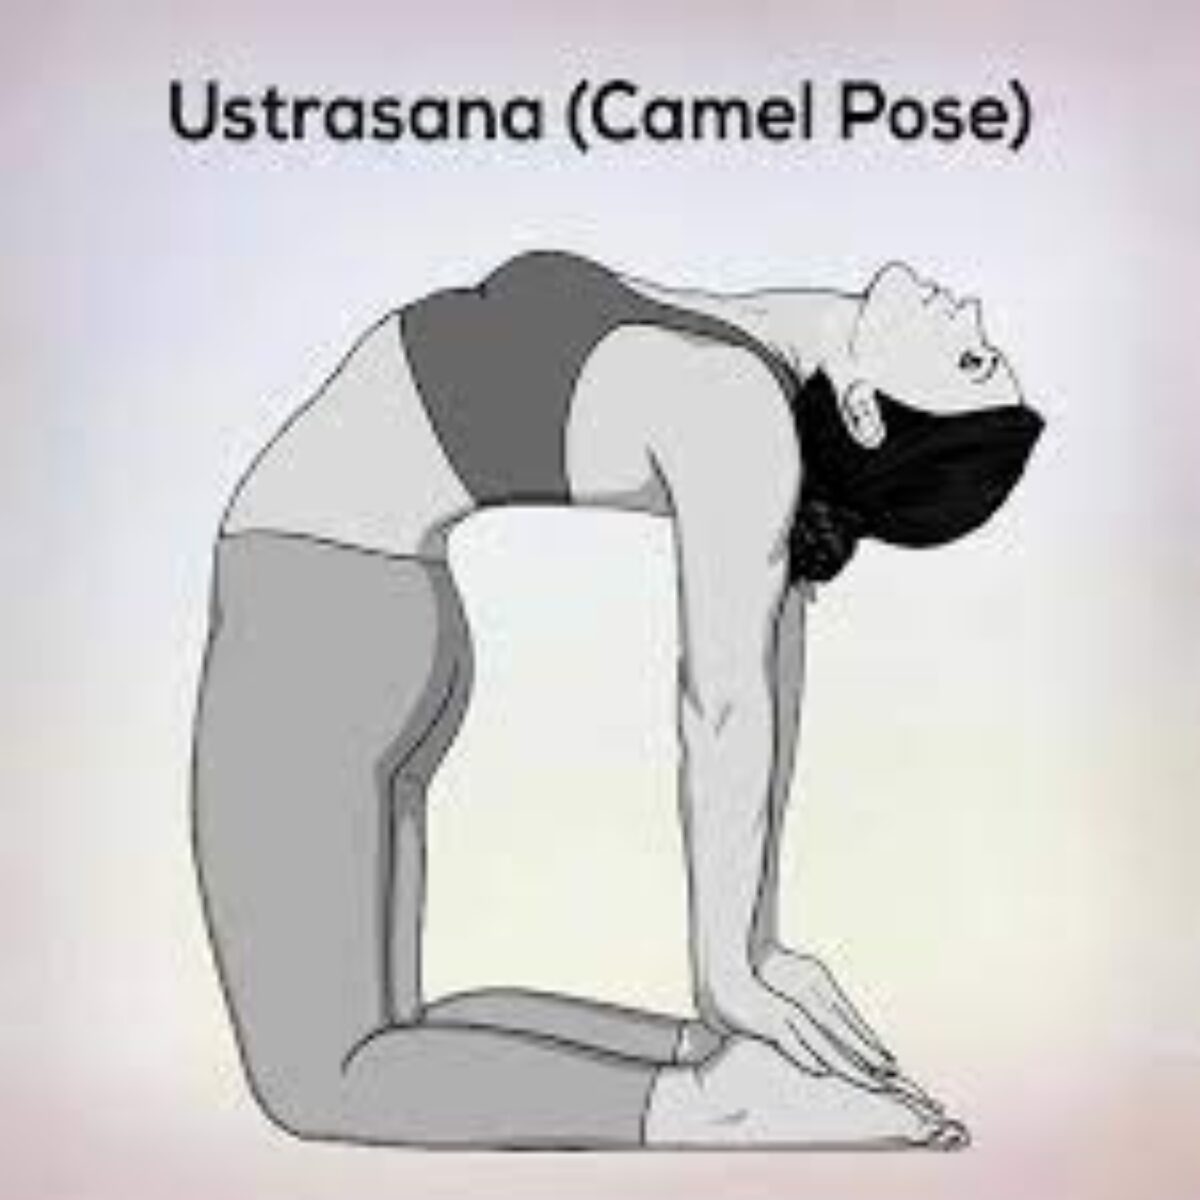 How To Do Camel Pose (Ustrasana) | Liforme